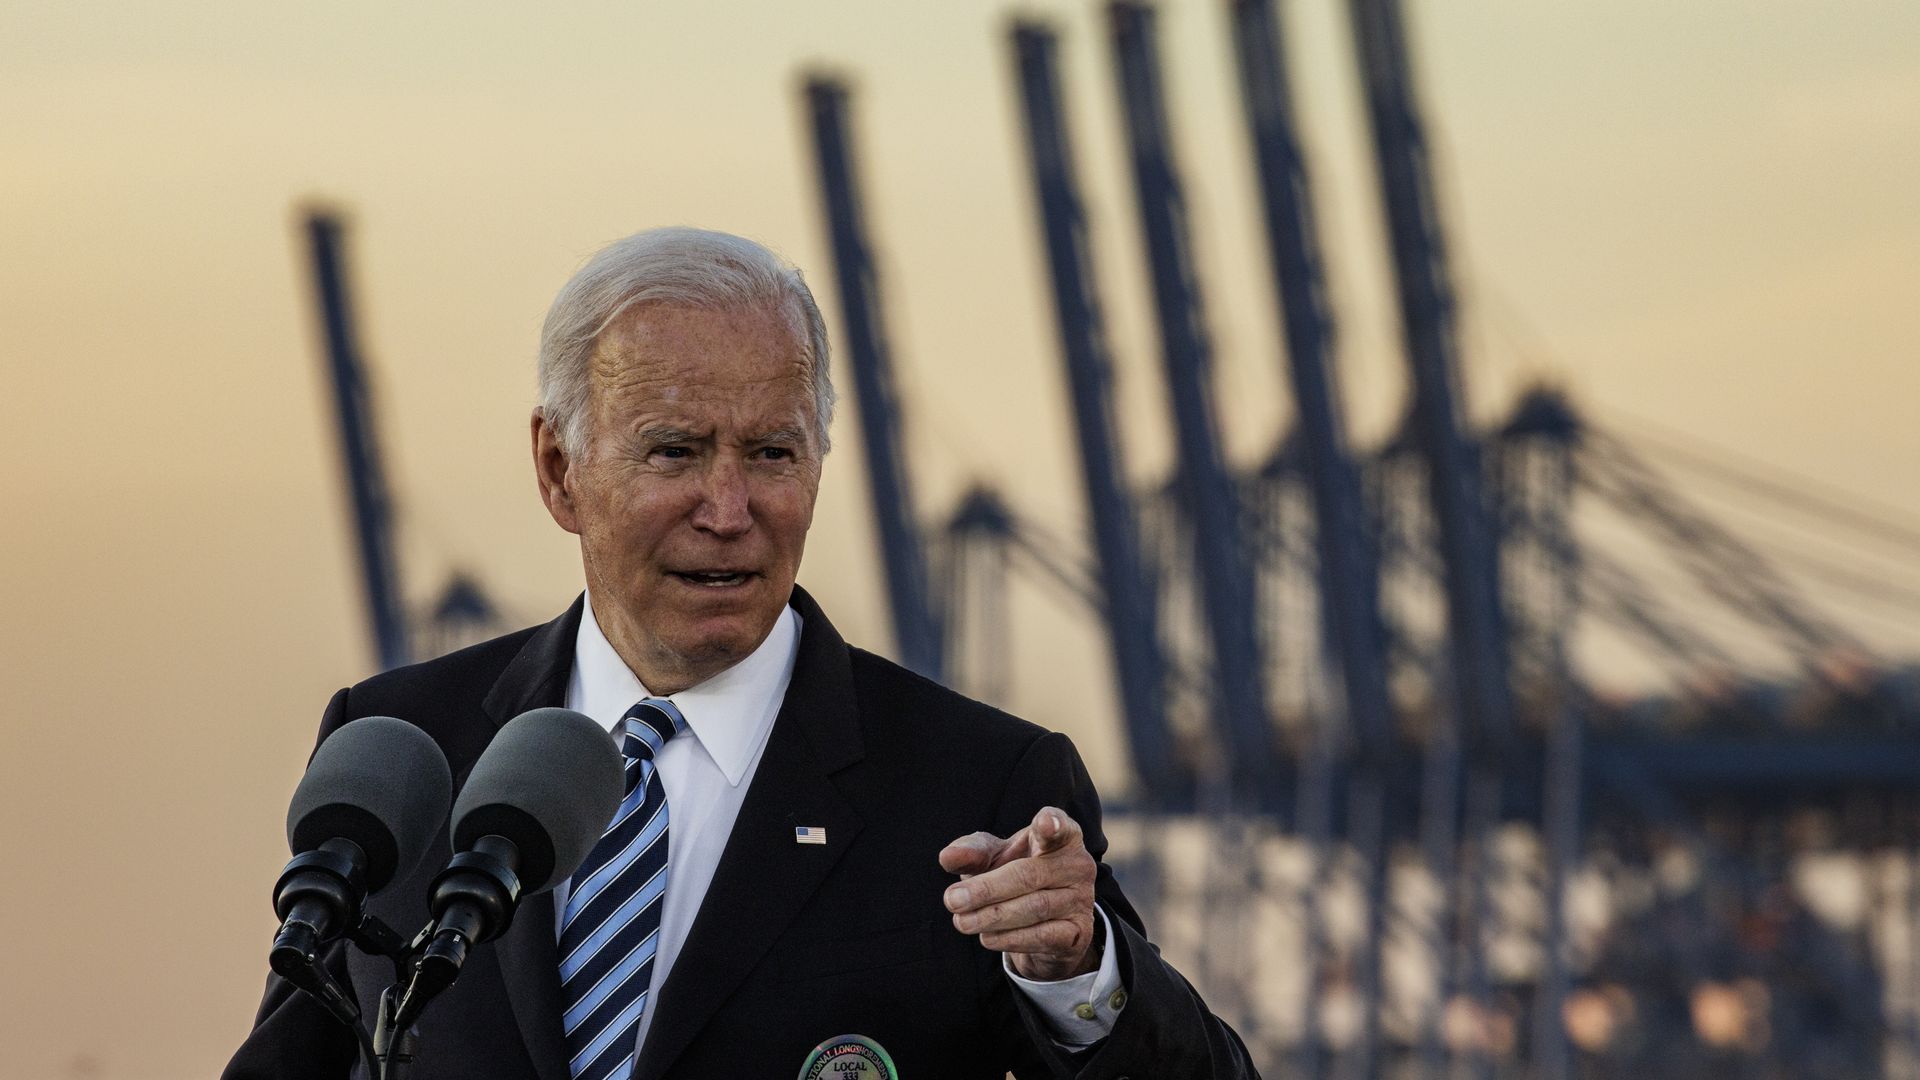 President Biden speaking in Baltimore on Nov. 10.